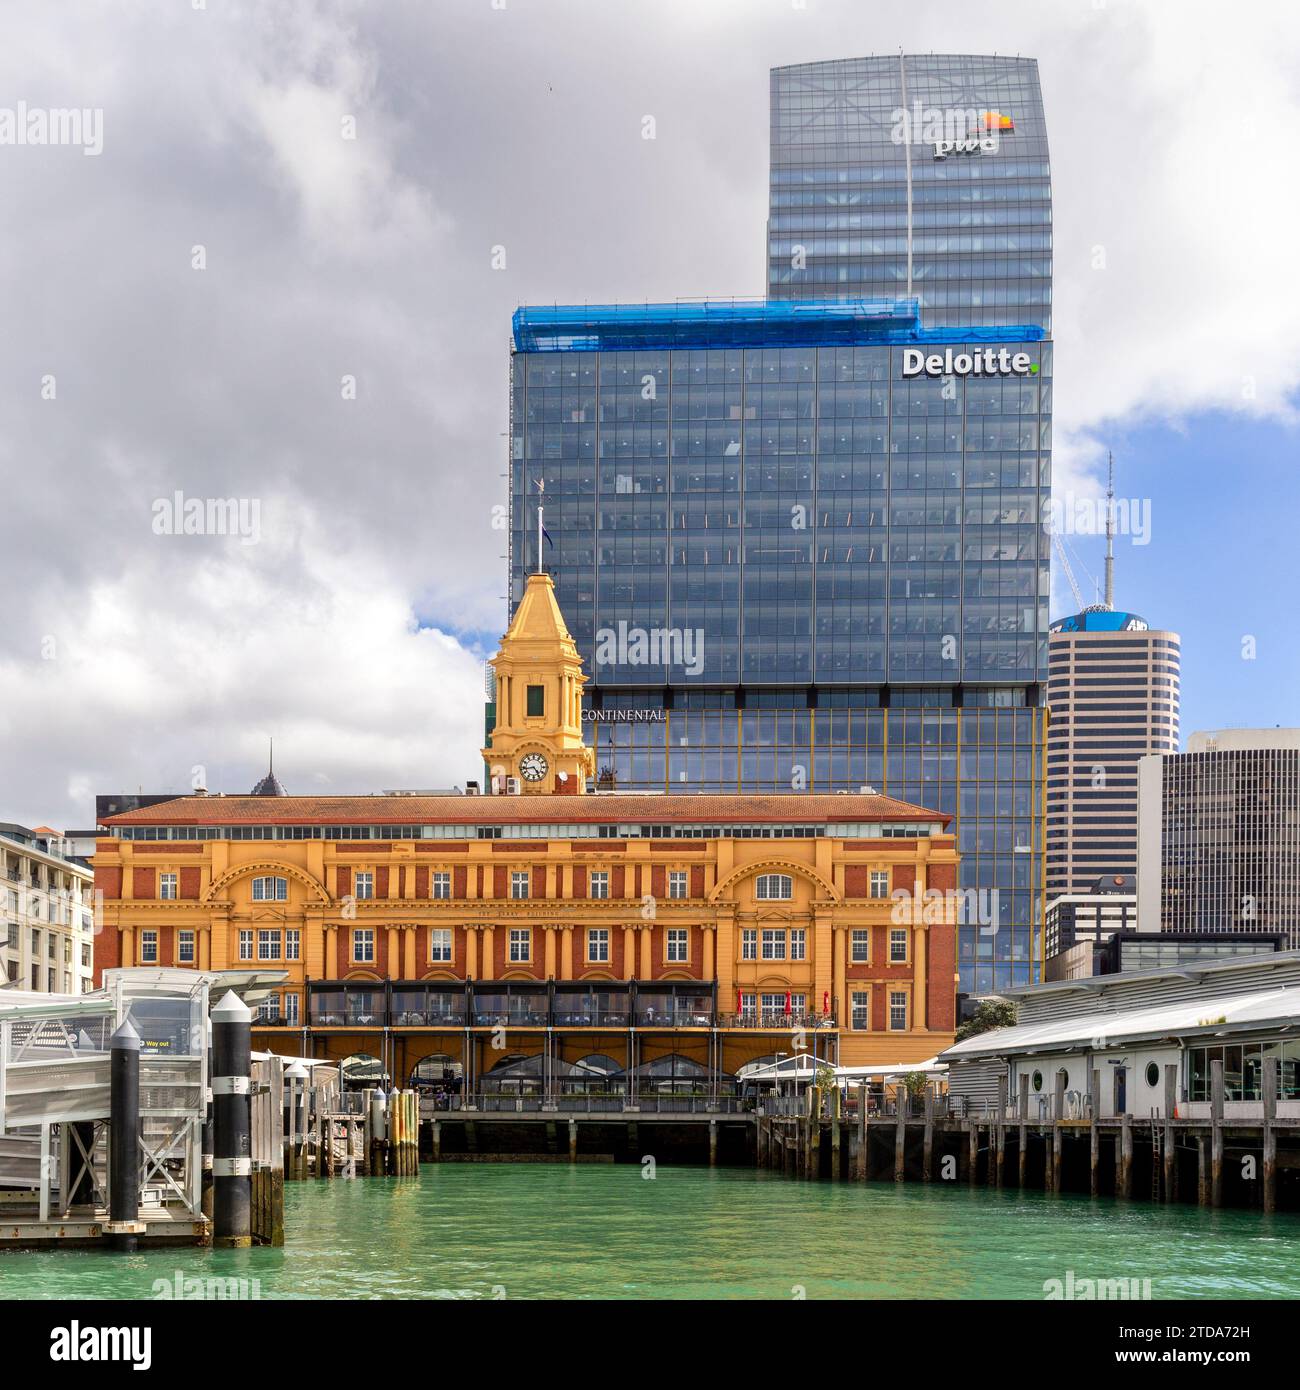 Kontrast zwischen den architektonischen Stilen des Ferry Building von 1912 und der modernen Hochhaus-Bürogebäude von Deloitte und PWC in der Innenstadt von Auckland, N Stockfoto